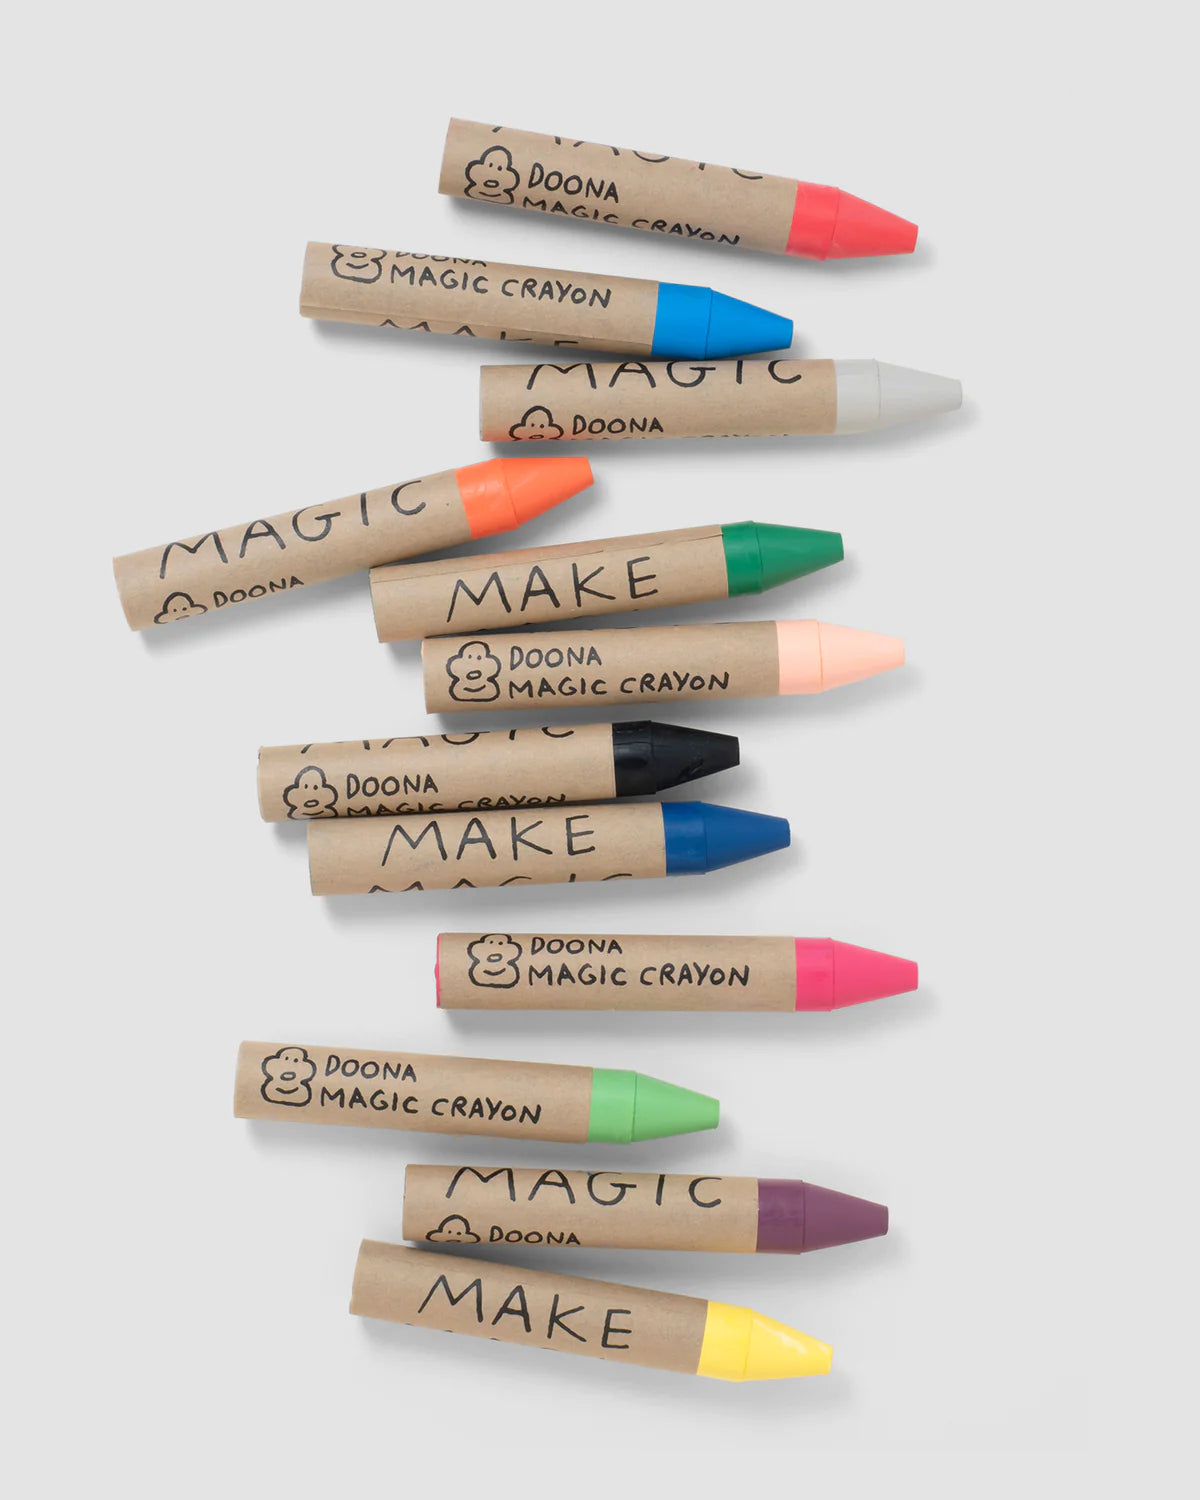 Doona's Magic Woset Crayons